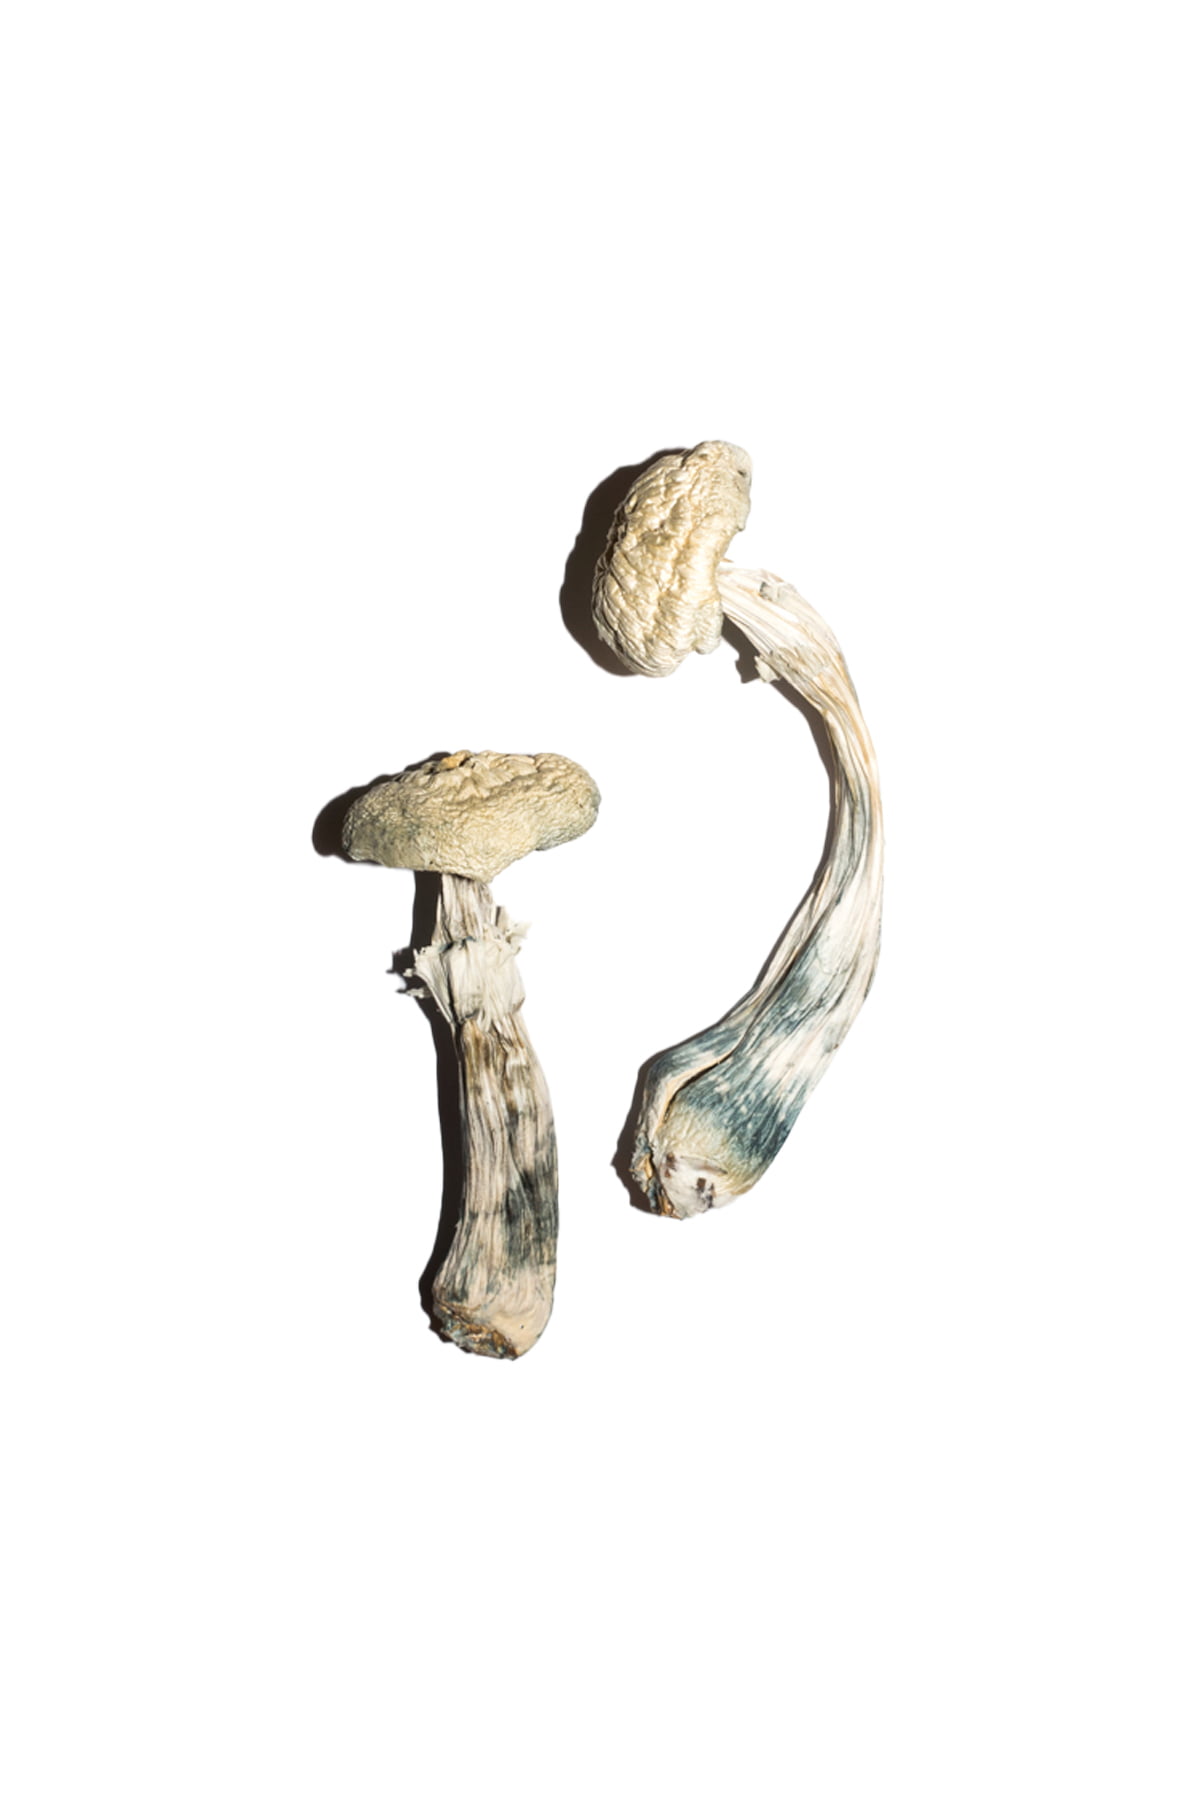 Avery Albino Mushroom